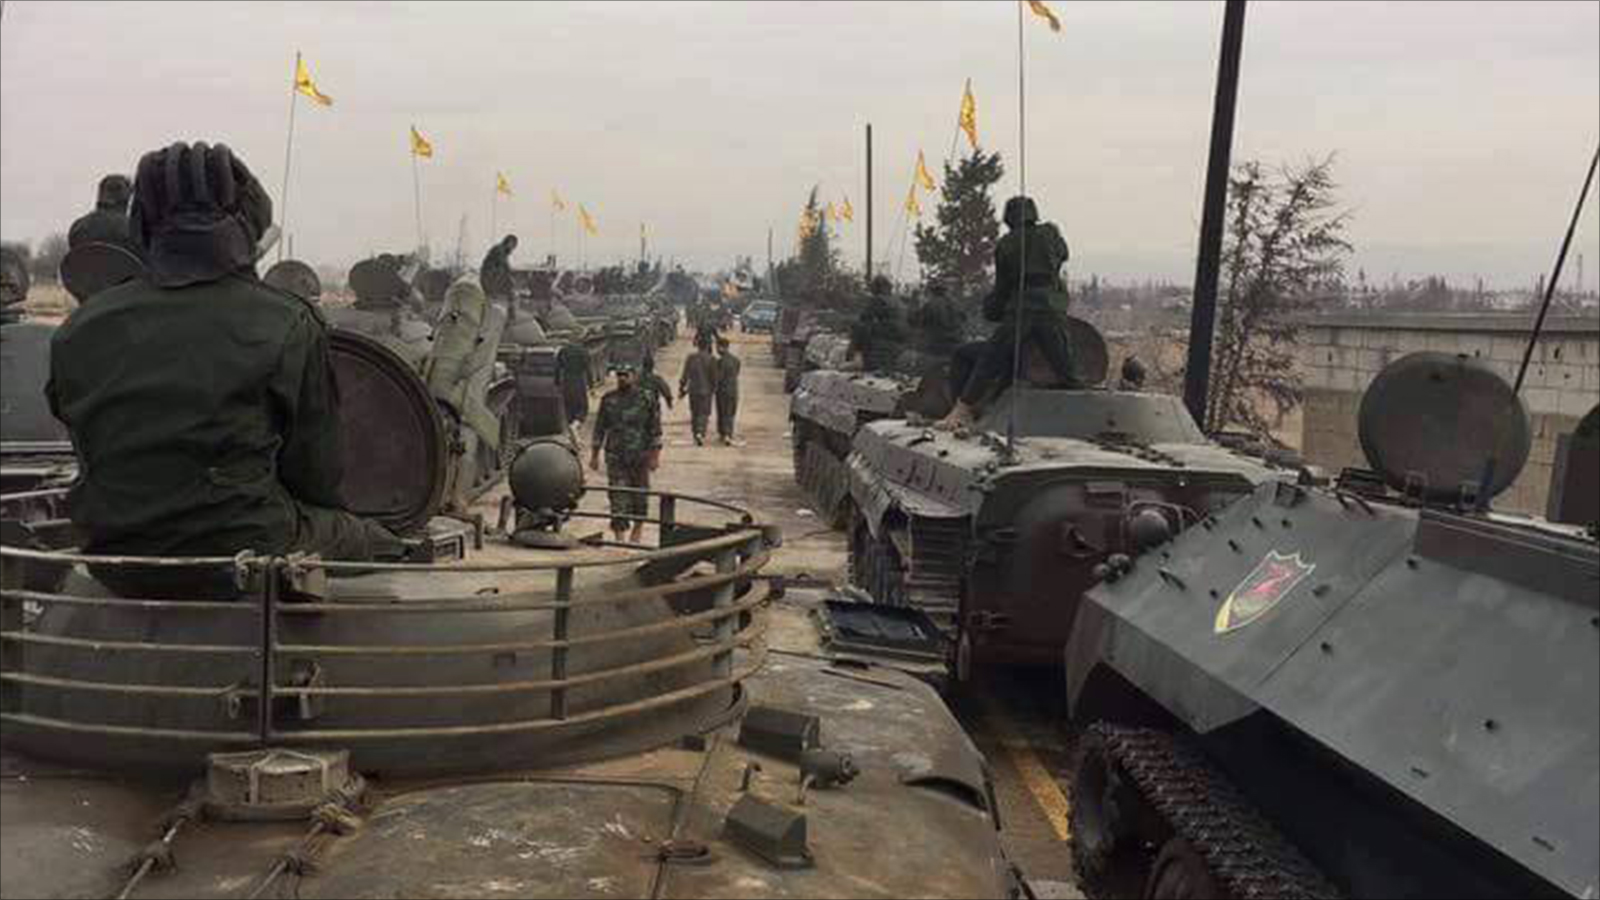 عناصر من حزب الله أثناء عرض عسكري في منطقة القلمون بحمص السورية (الجزيرة-أرشيف)